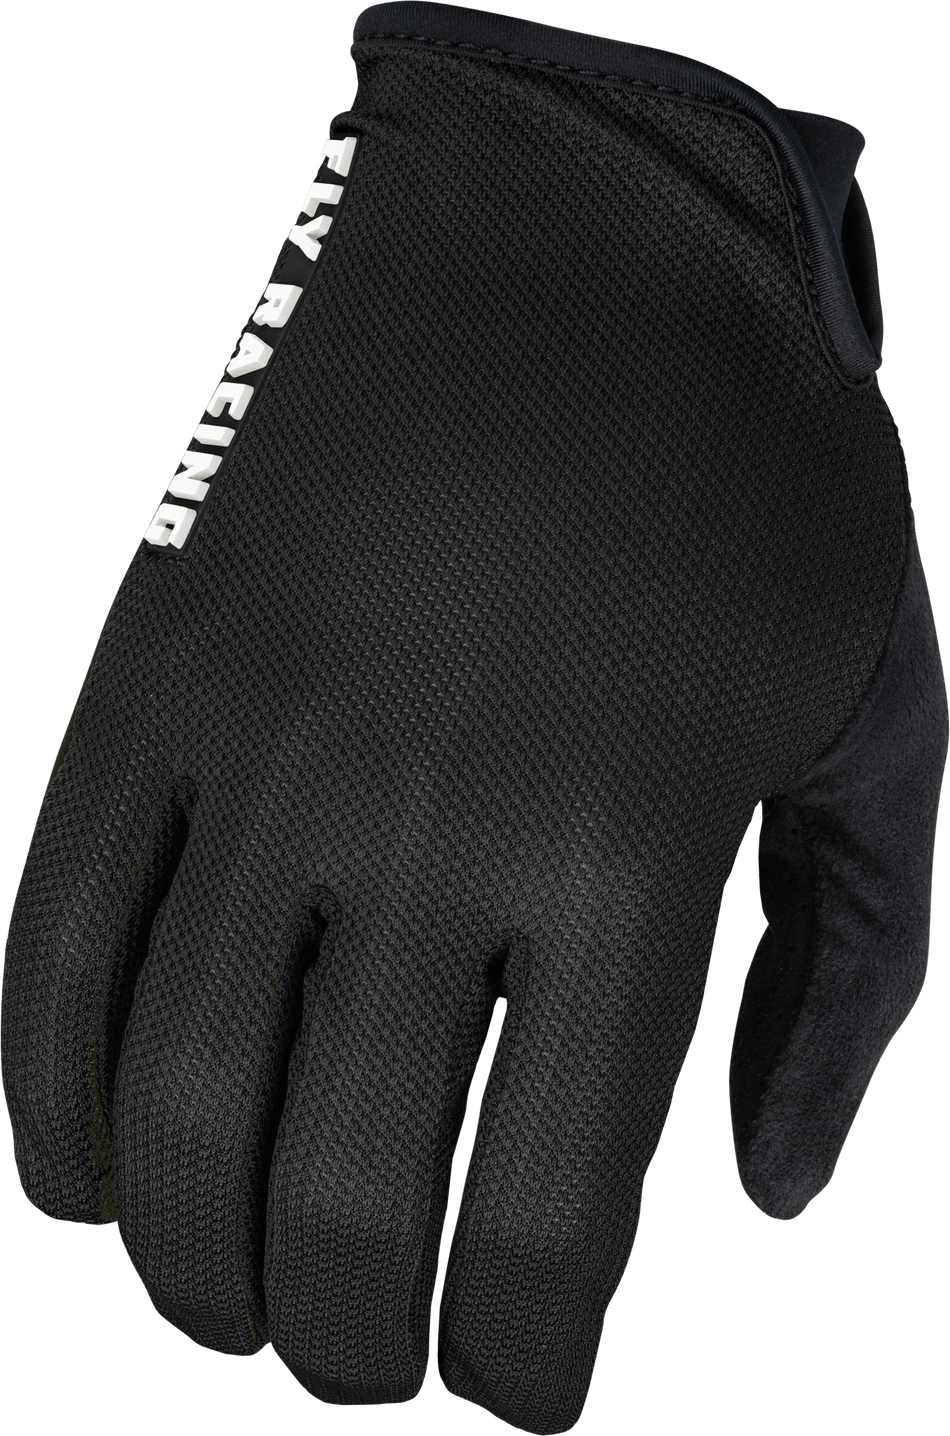 FLY RACING Mesh Gloves Black 3x 375-3003X